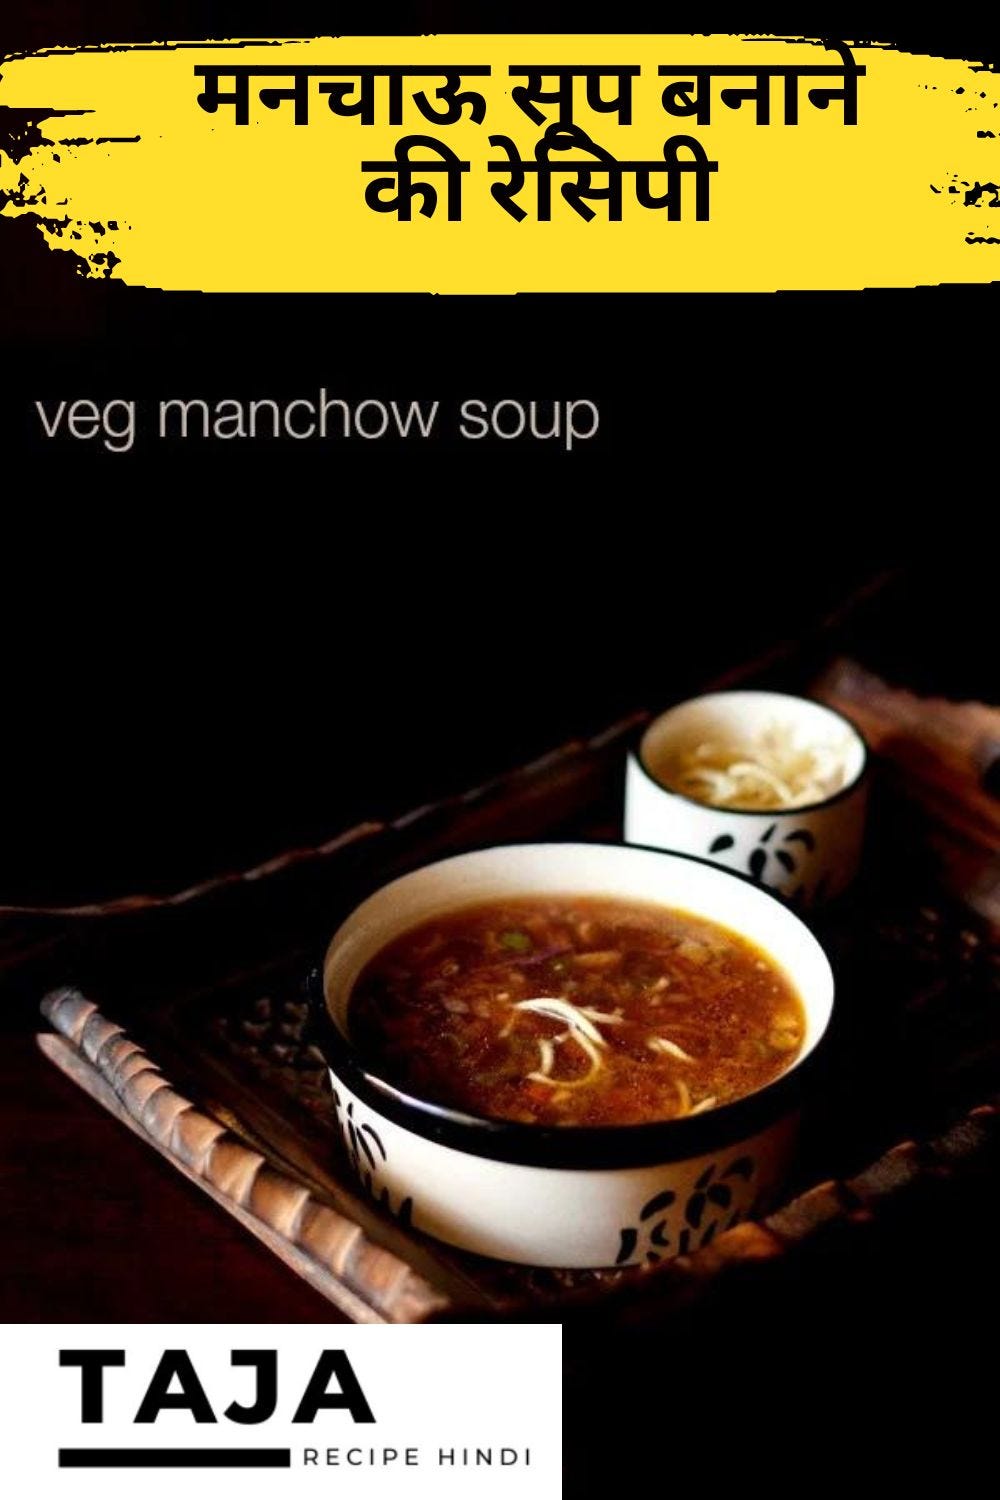 मनचाऊ सूप बनाने की रेसिपी बनाने में बेहद आसान है